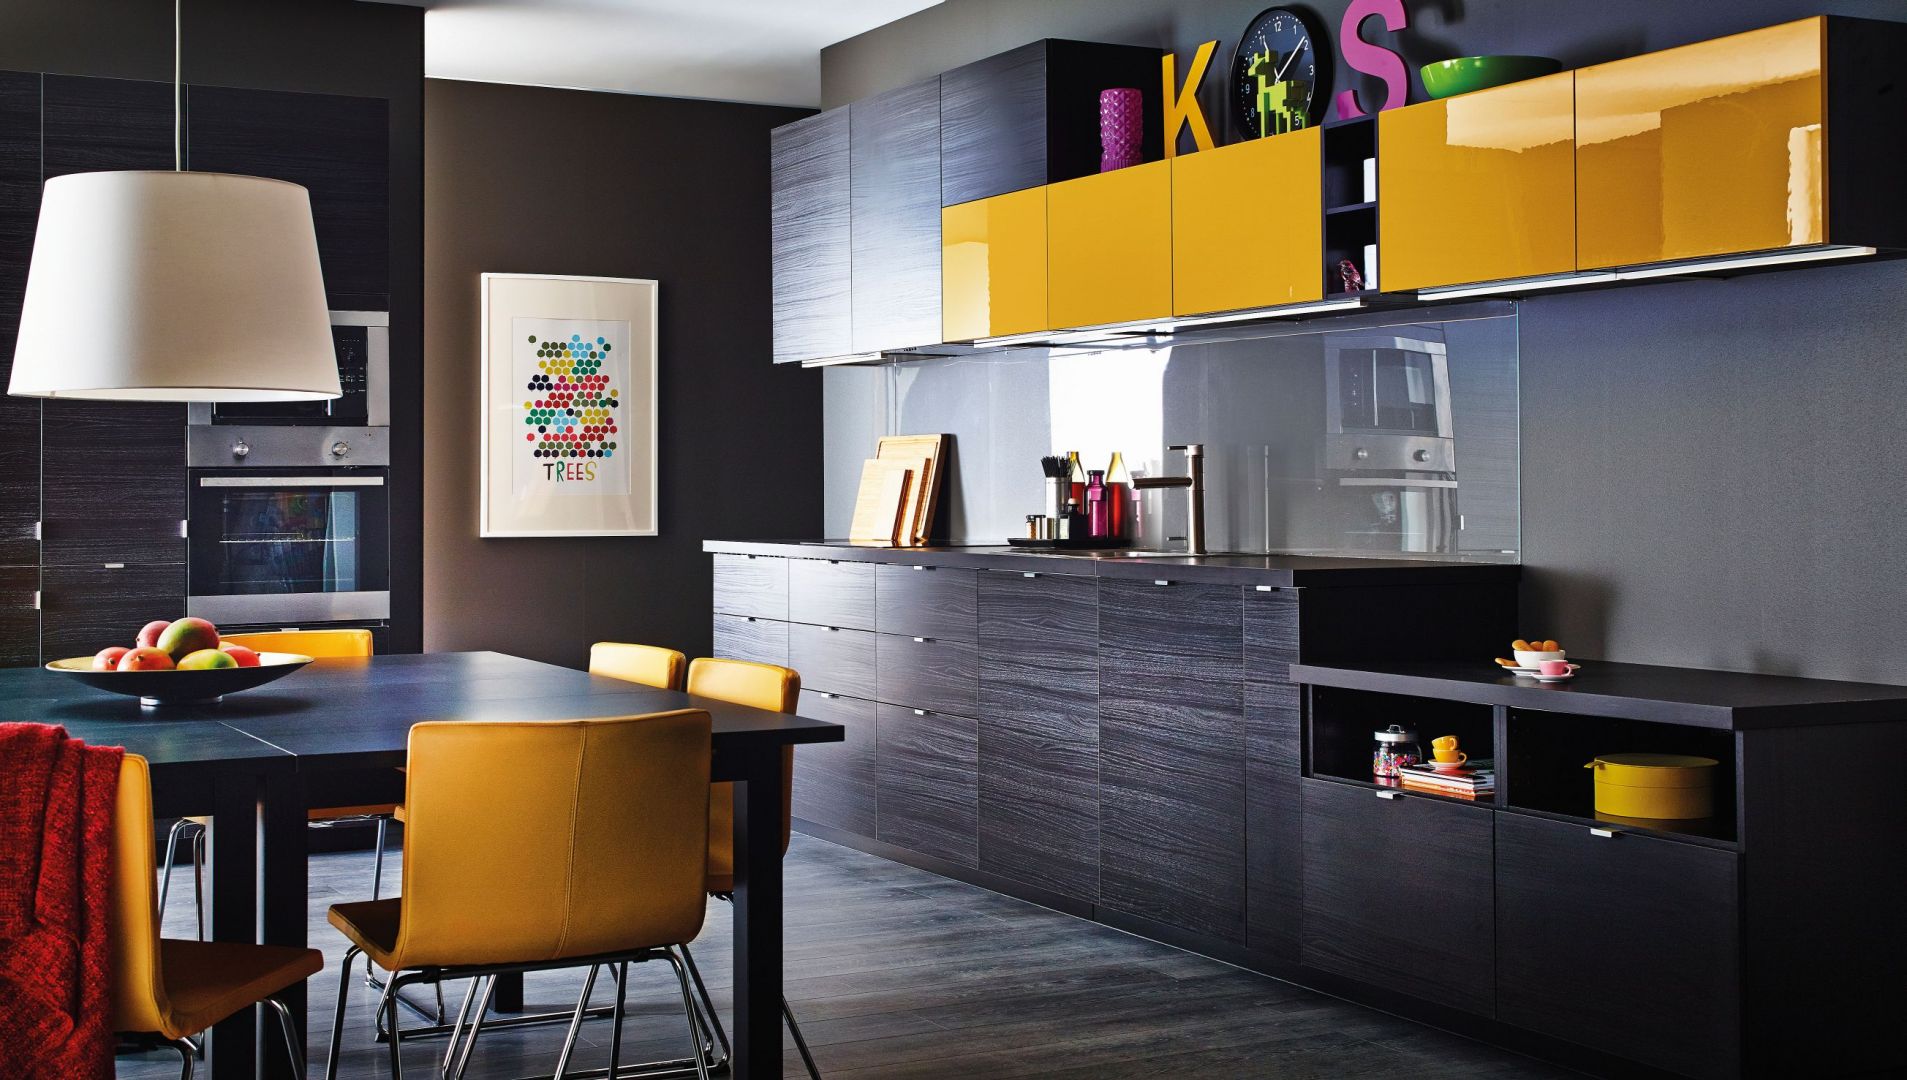 Kuchnia Metod firmy IKEA. Ściana wykończona przezroczystym szkłem
podkreśla ciekawą kolorystykę mebli – imitującą czarne drewno oraz żółty w połysku. Fot.IKEA.